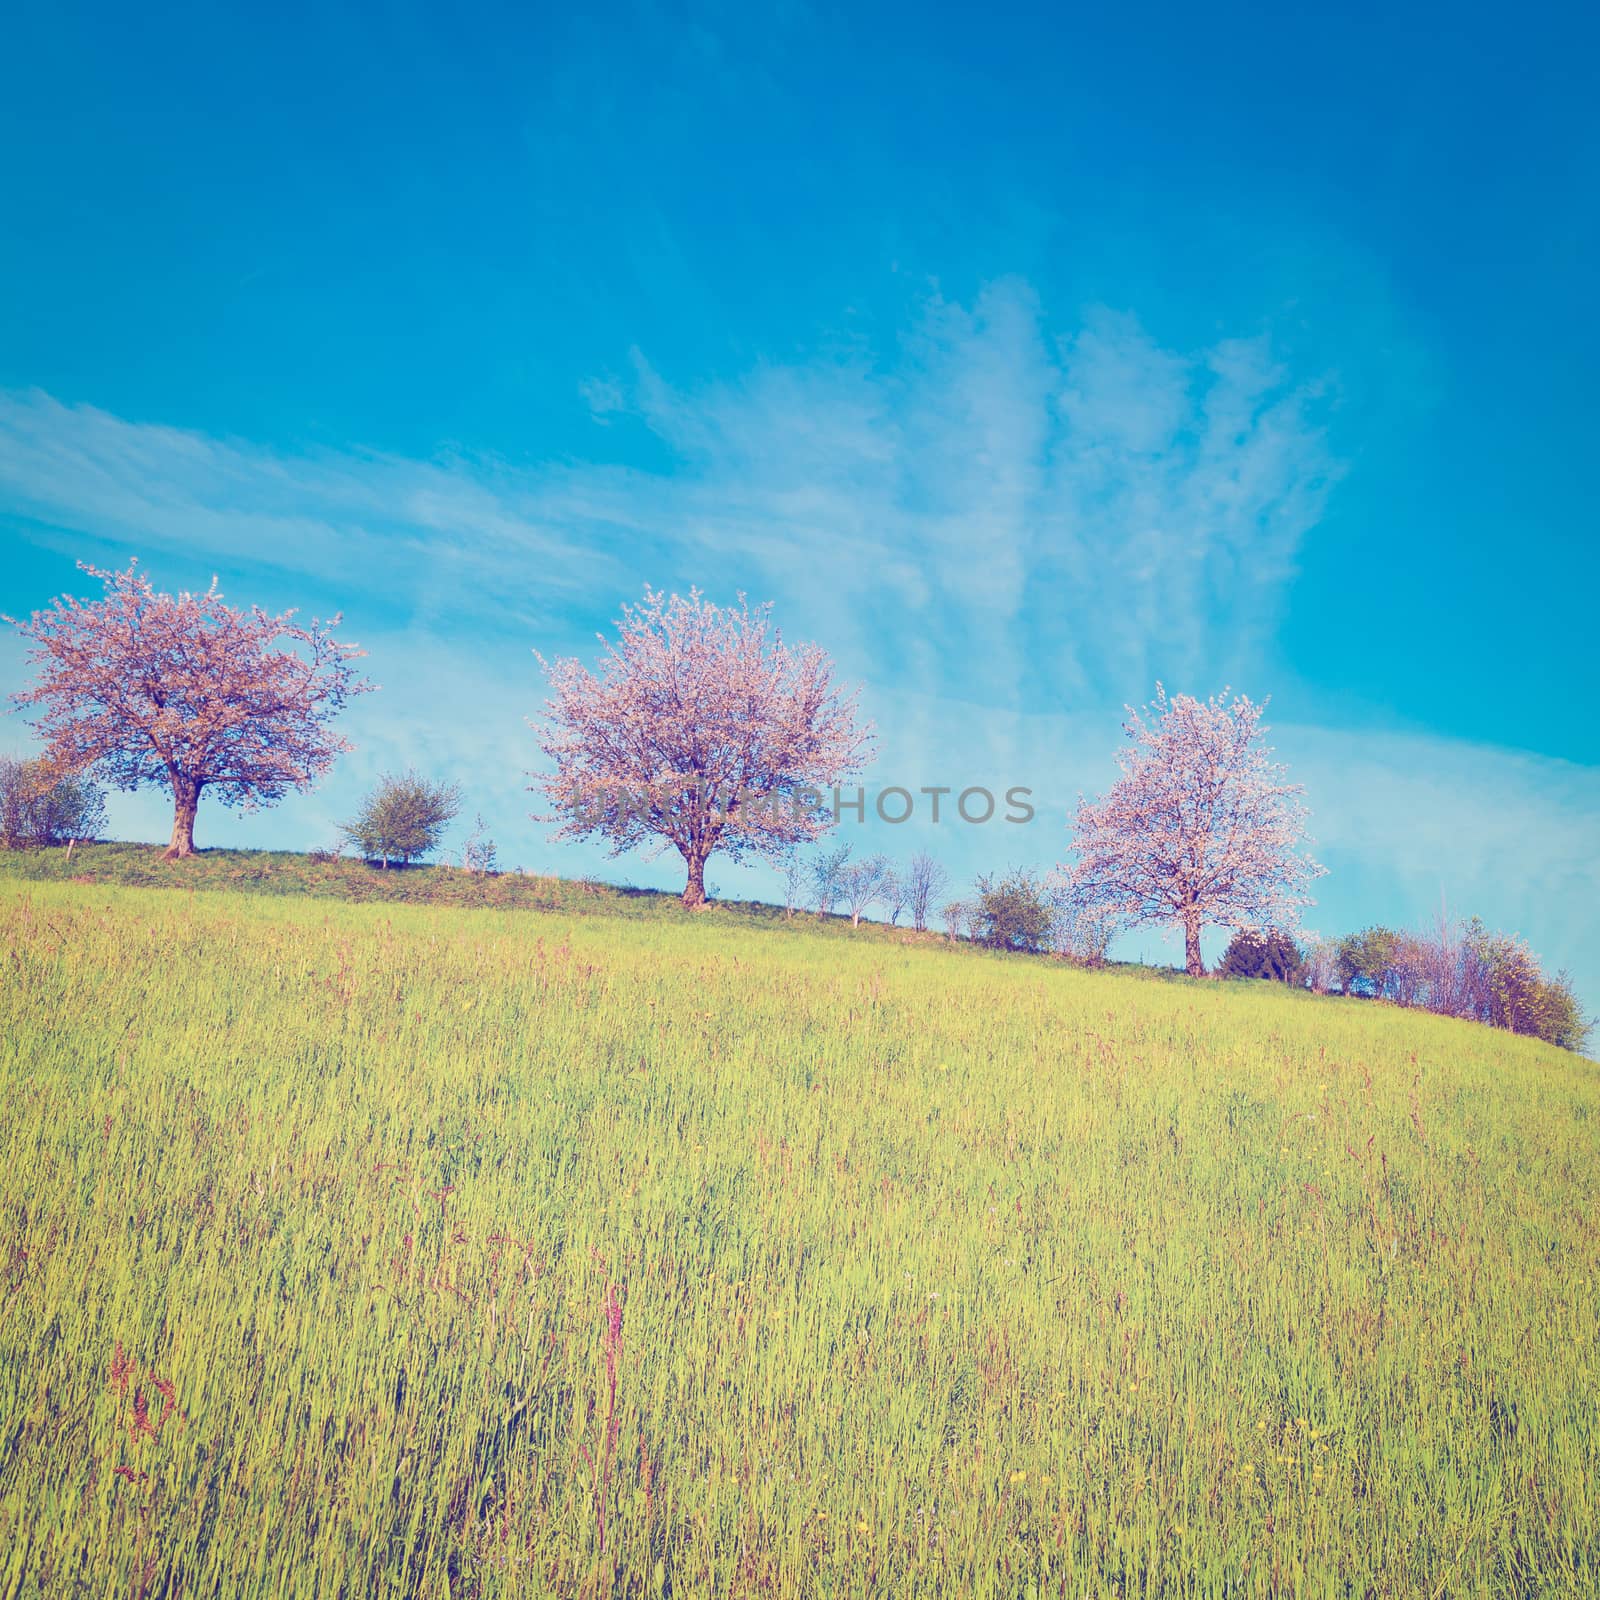 Flowering Trees by gkuna